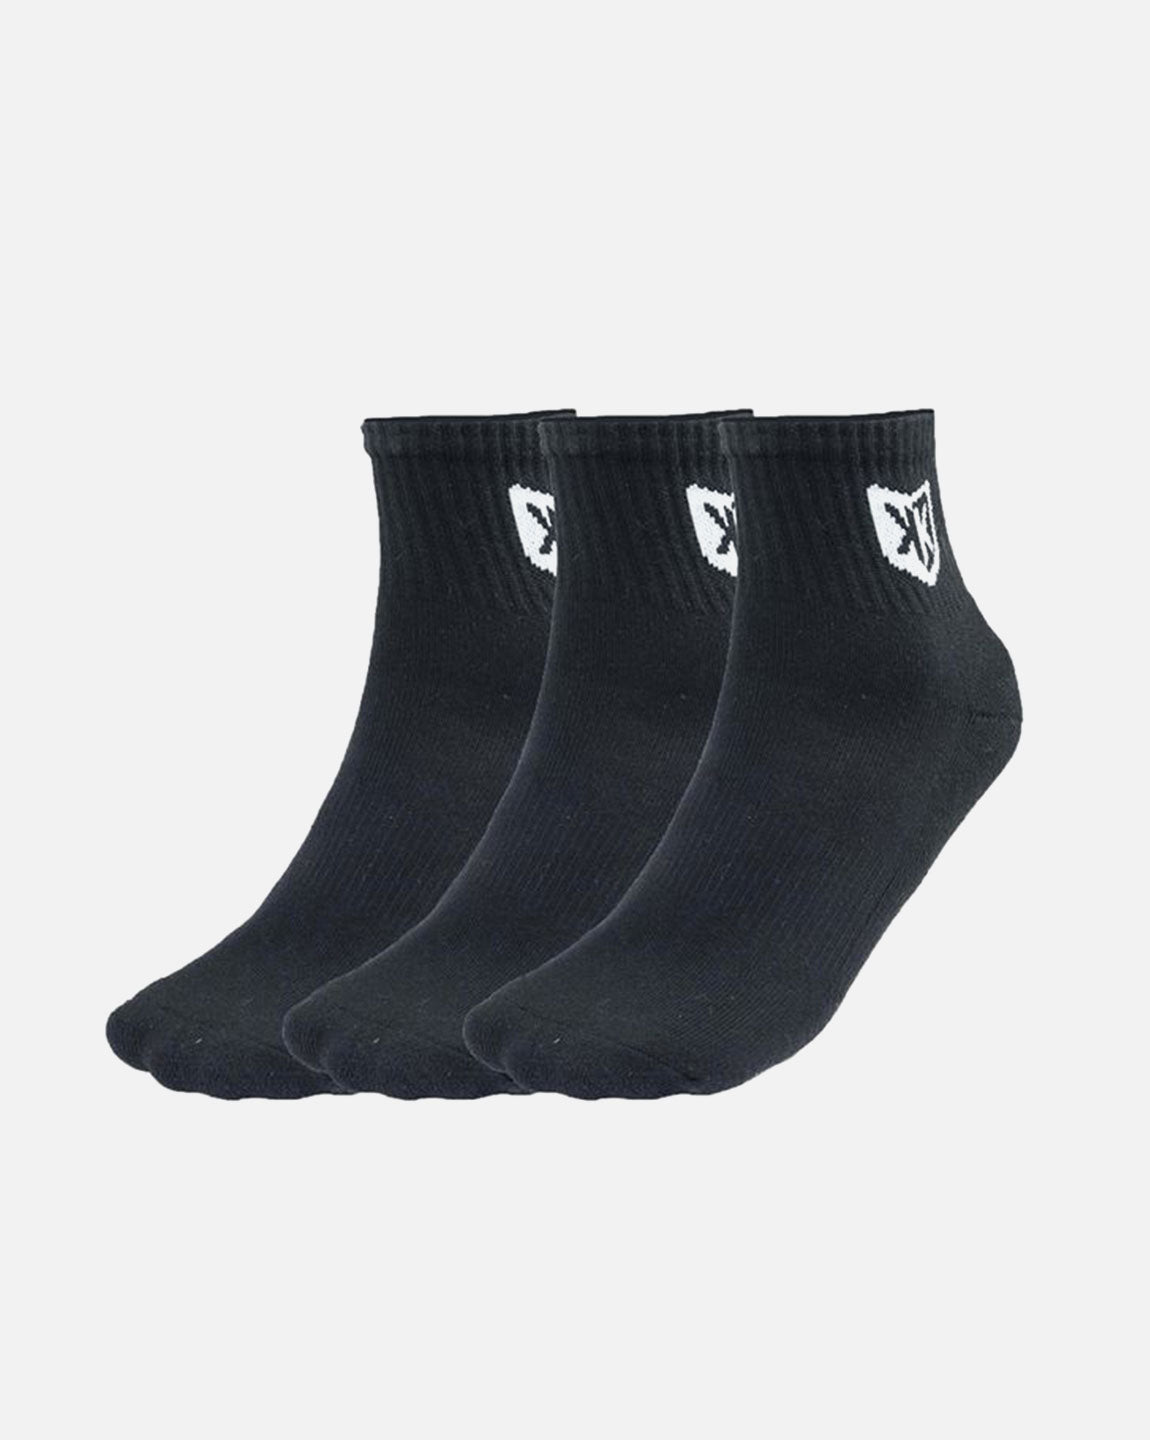 Pack of 3 pairs of FK 3/4 socks - Black